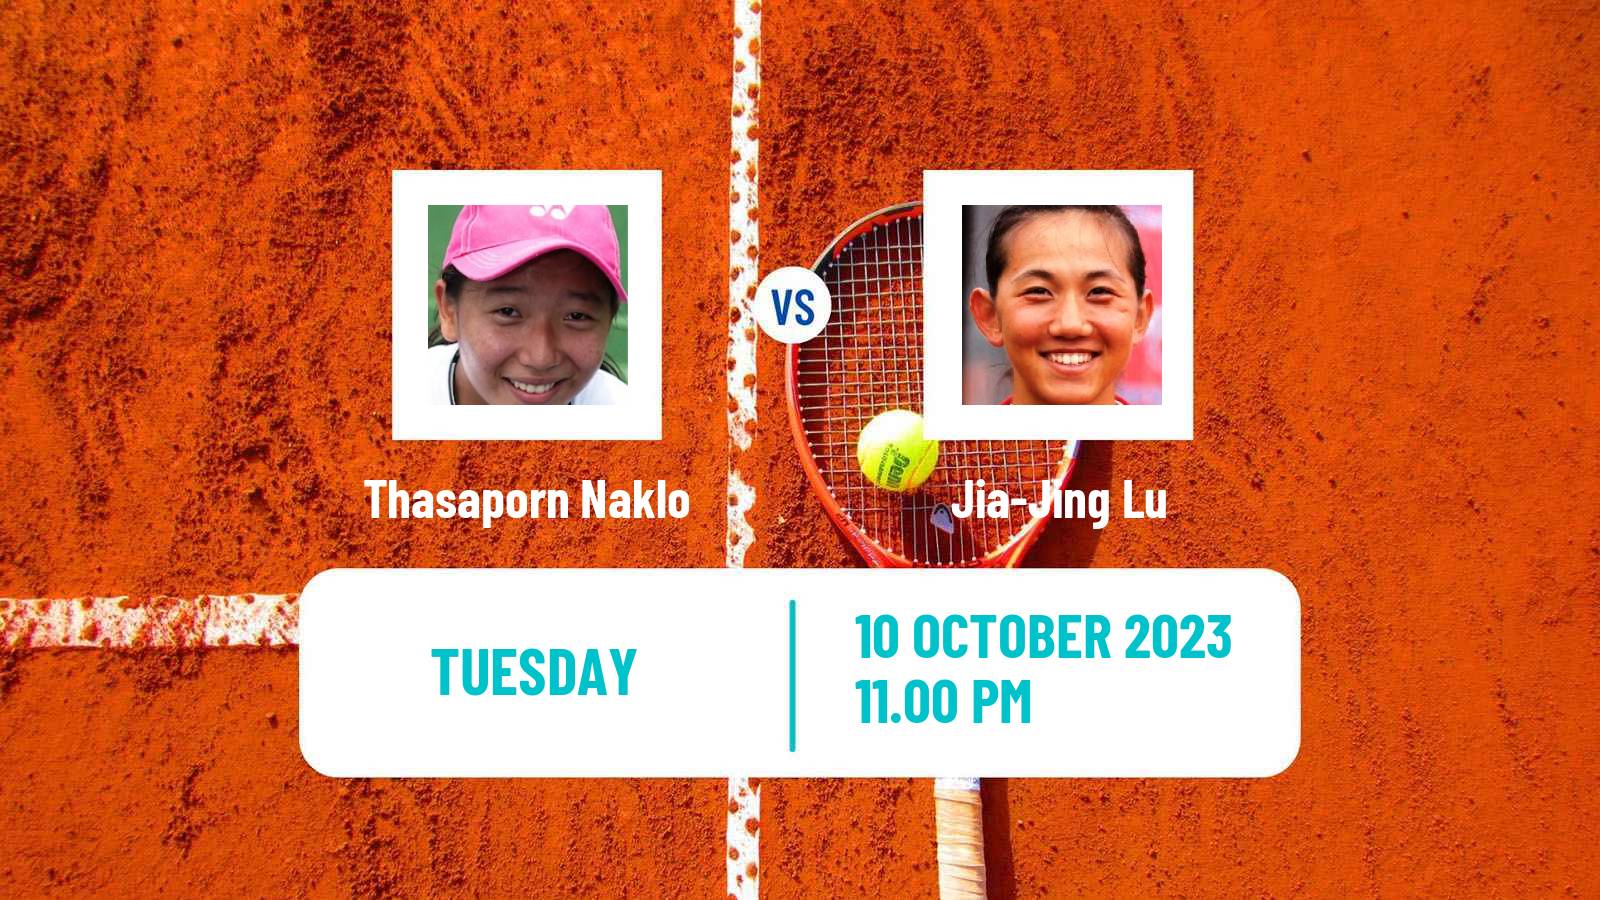 Tennis ITF W40 Shenzhen Women Thasaporn Naklo - Jia-Jing Lu